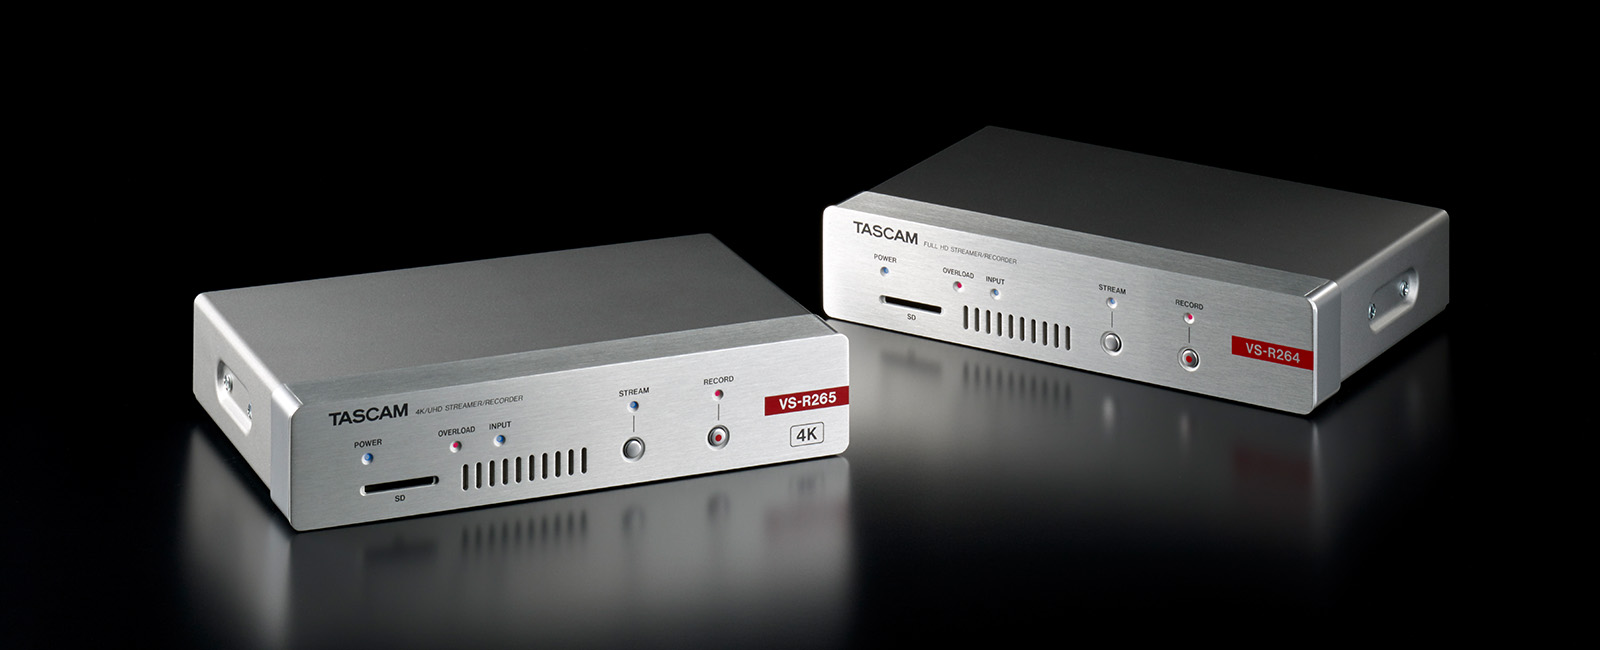 TASCAM Introduces VS Series AV over IP Appliances For Commercial AV and Live Video Streaming Applica